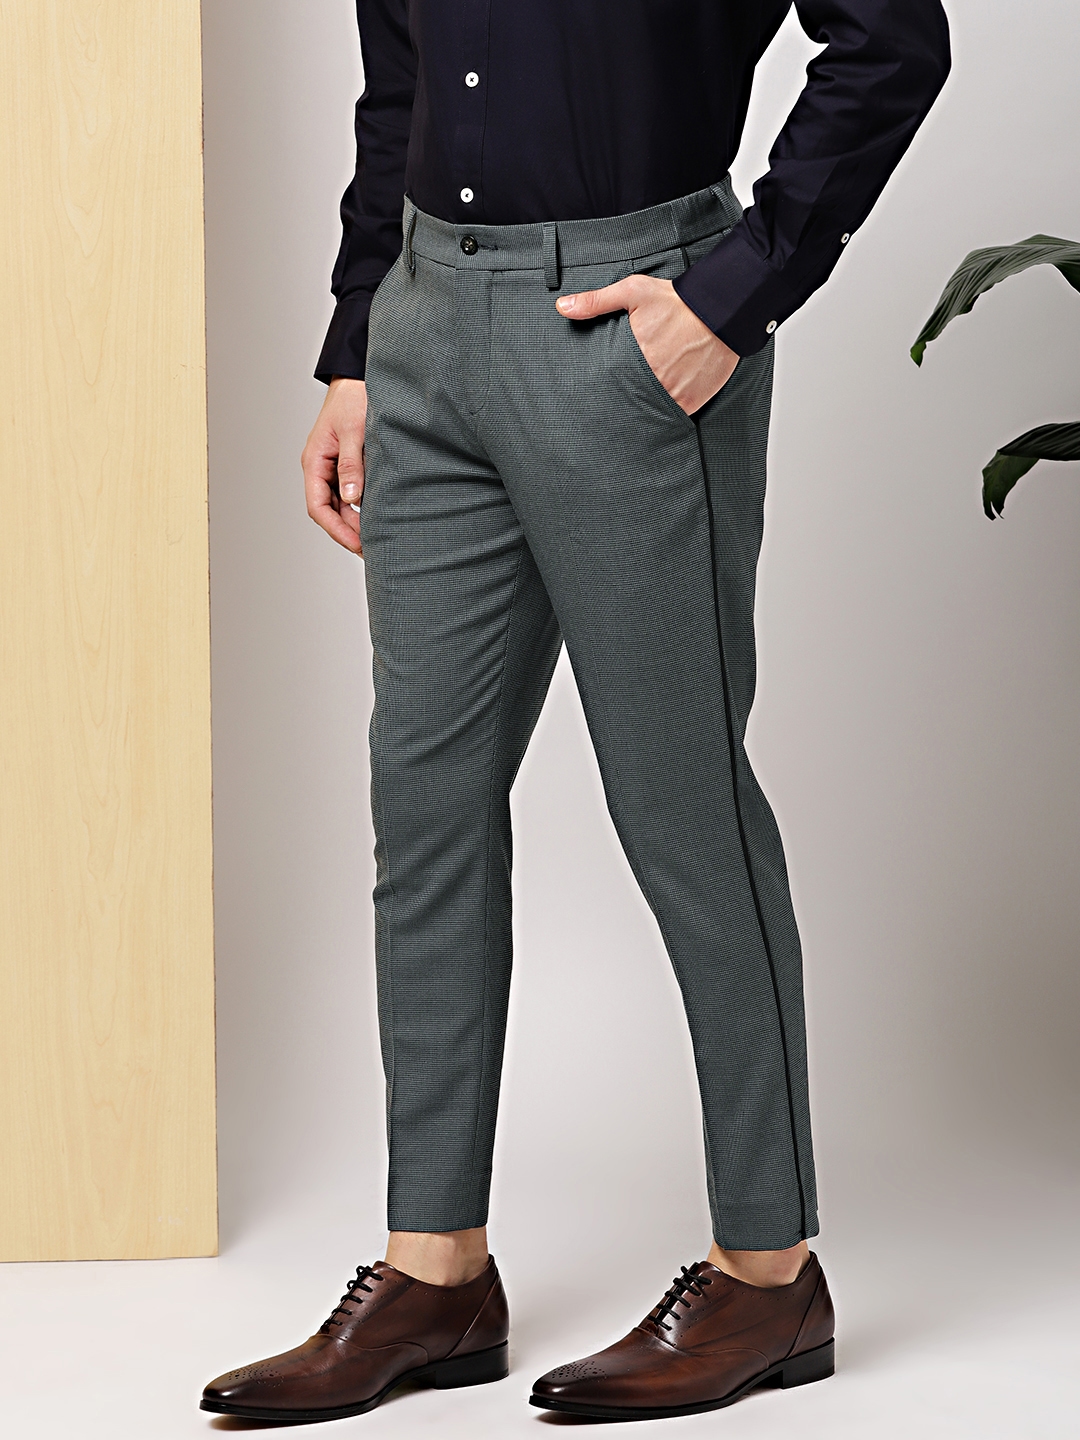 Top 999+ formal pants for mens design images – Amazing Collection formal pants for mens design images Full 4K